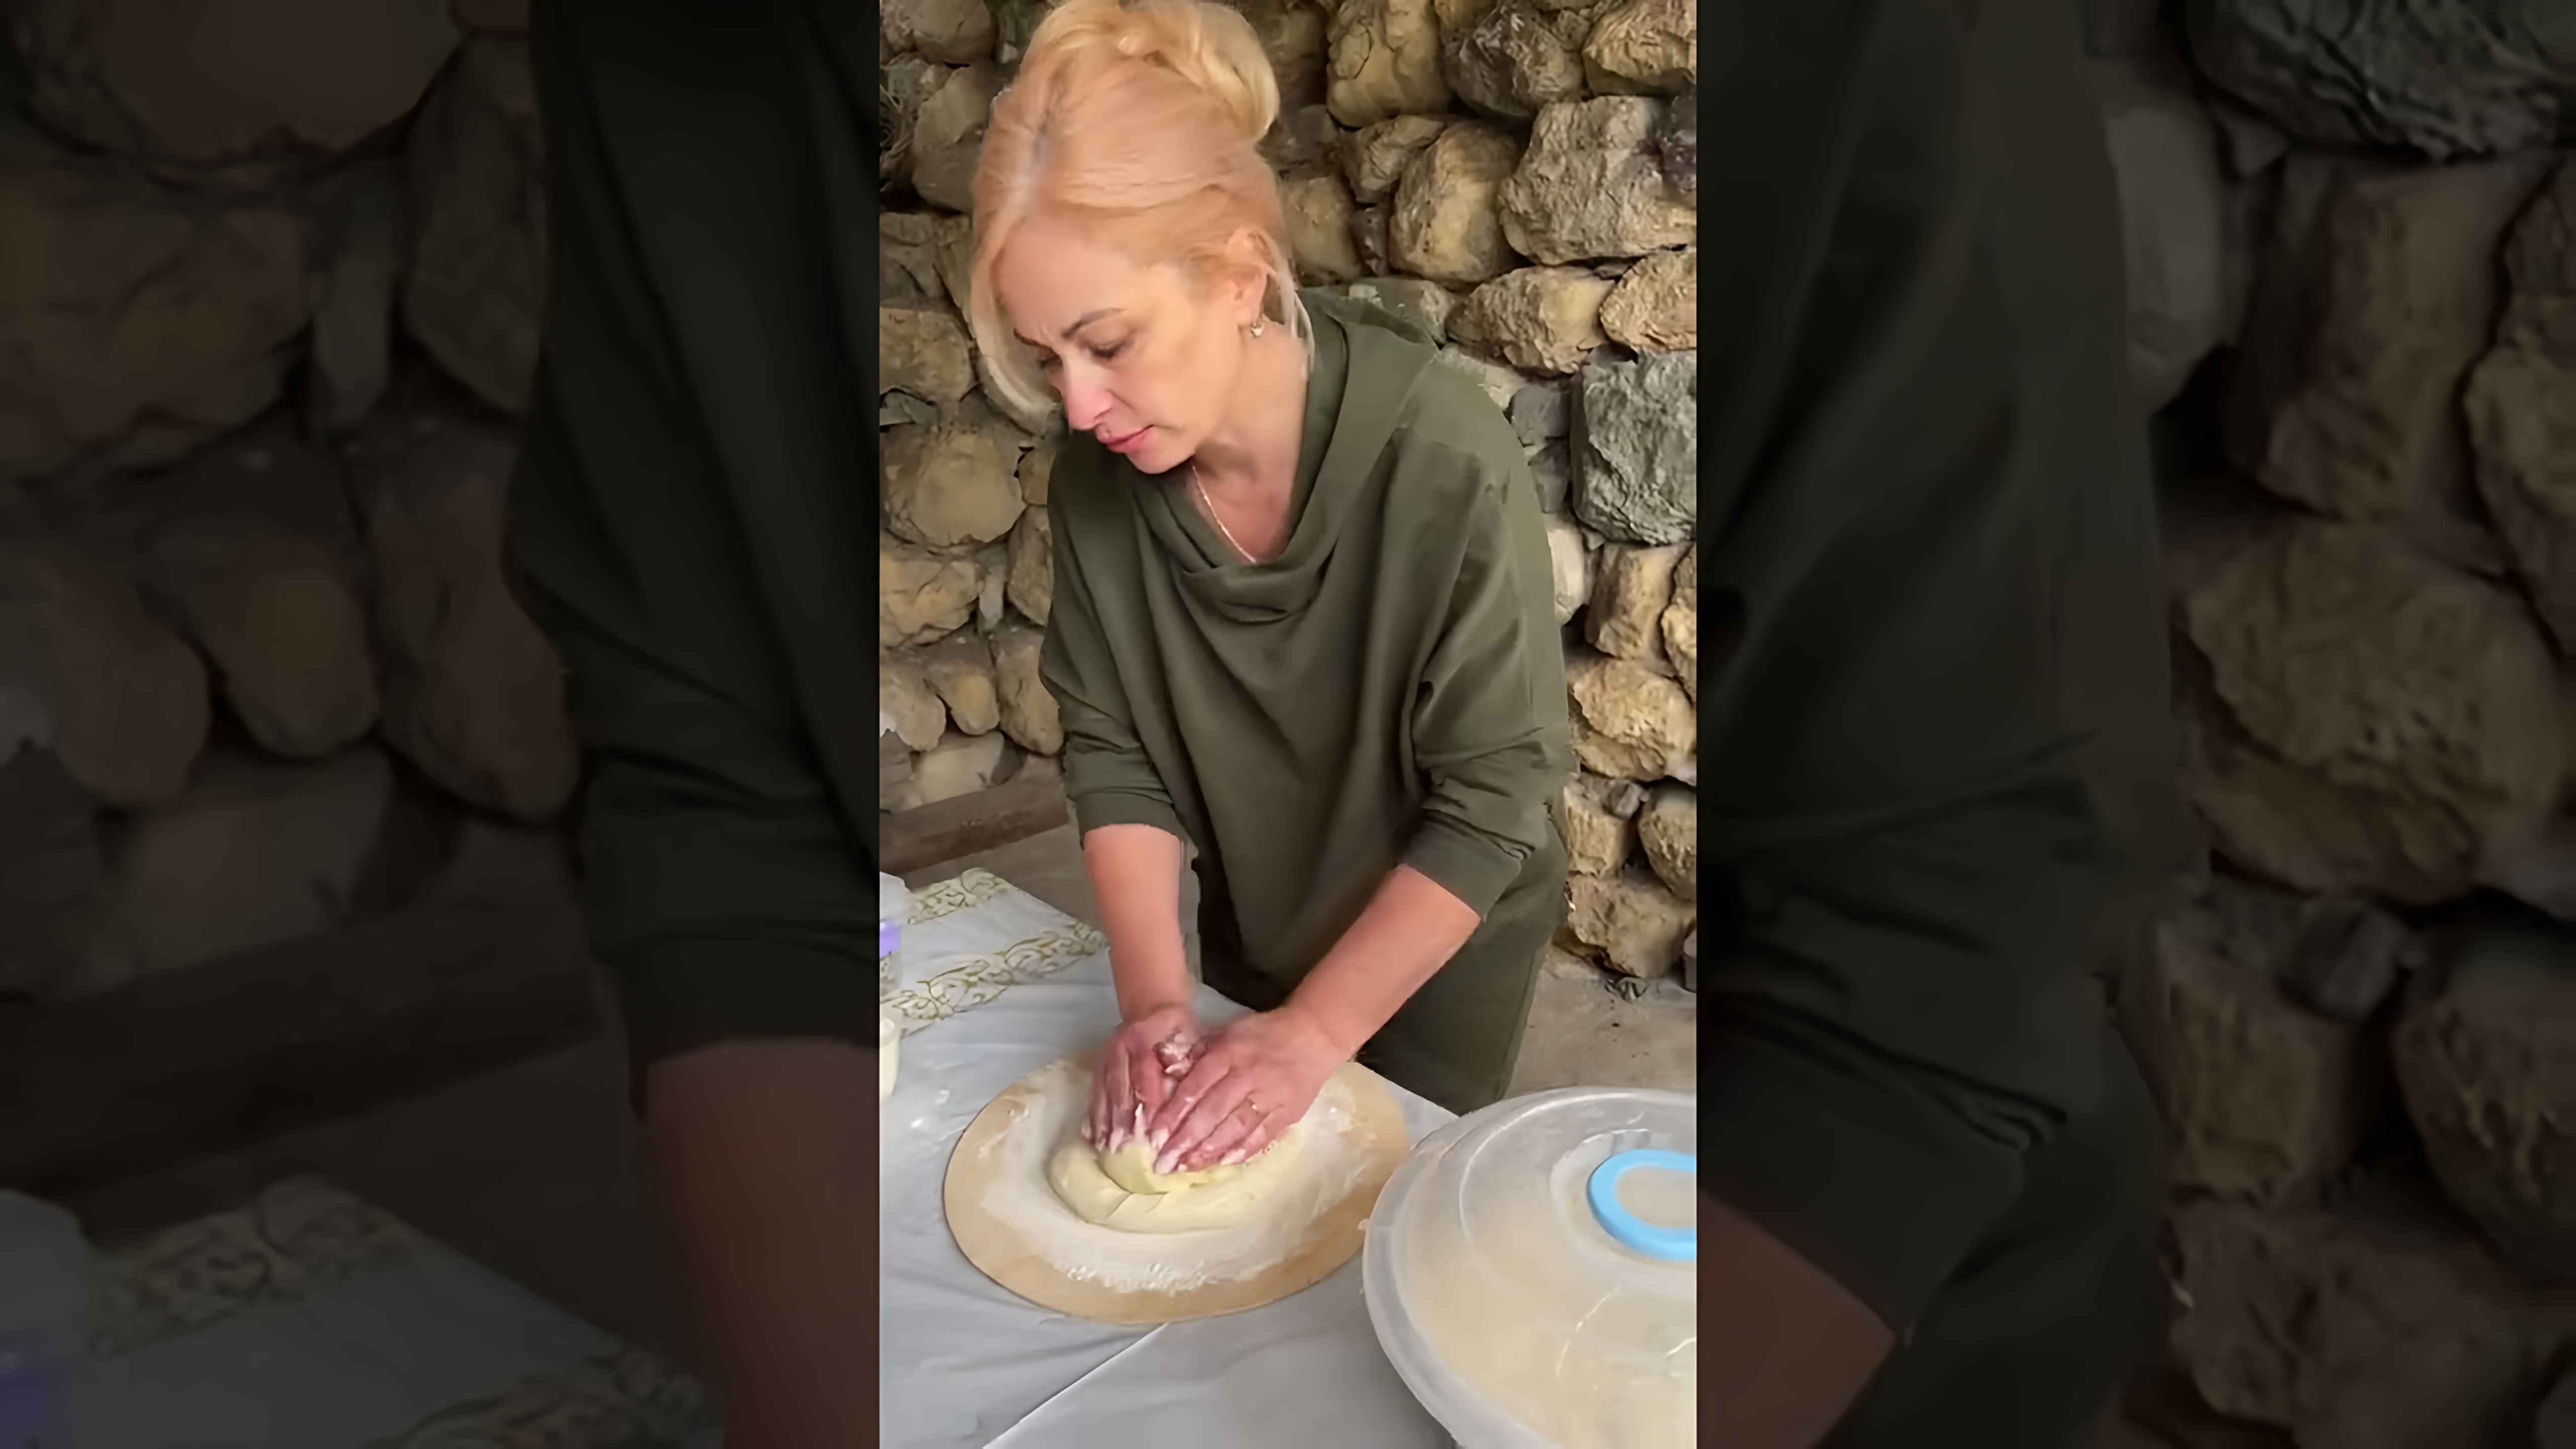 Осетинка научила готовить настоящие осетинские пироги - это видео-ролик, в котором женщина из Осетии делится своим опытом и секретами приготовления традиционных осетинских пирогов